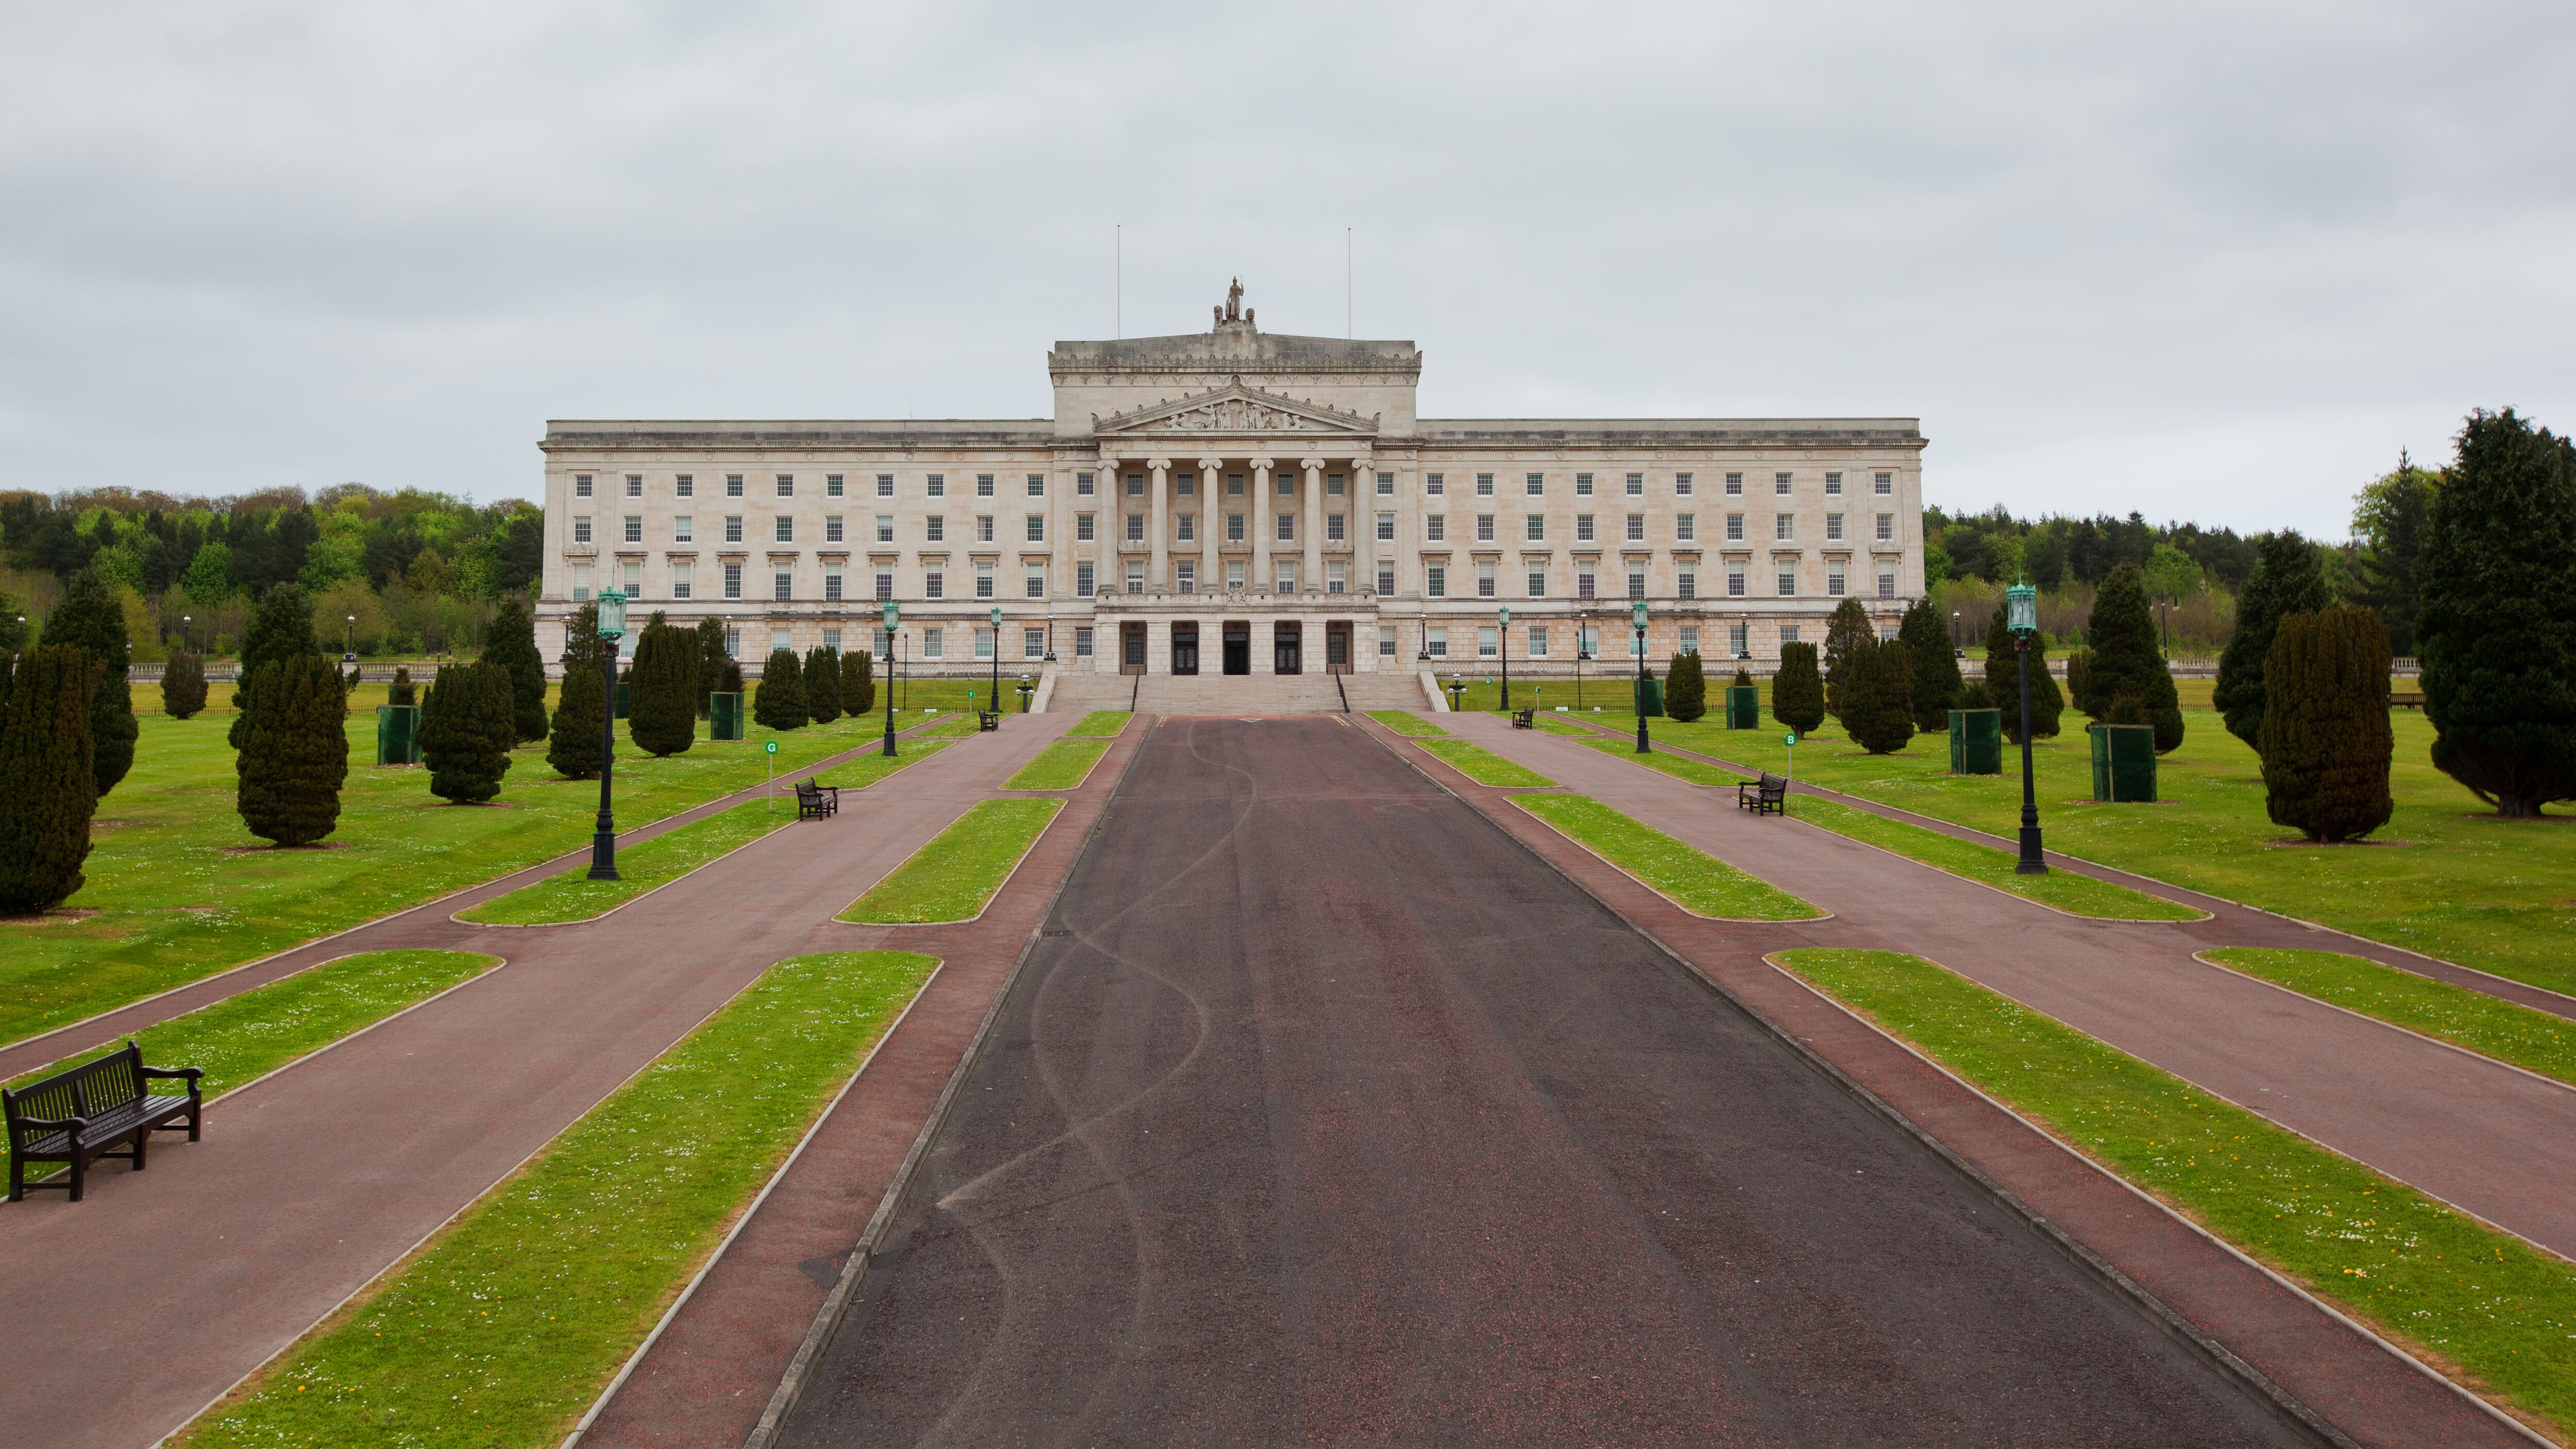 Stormont parliament buildings in Belfast